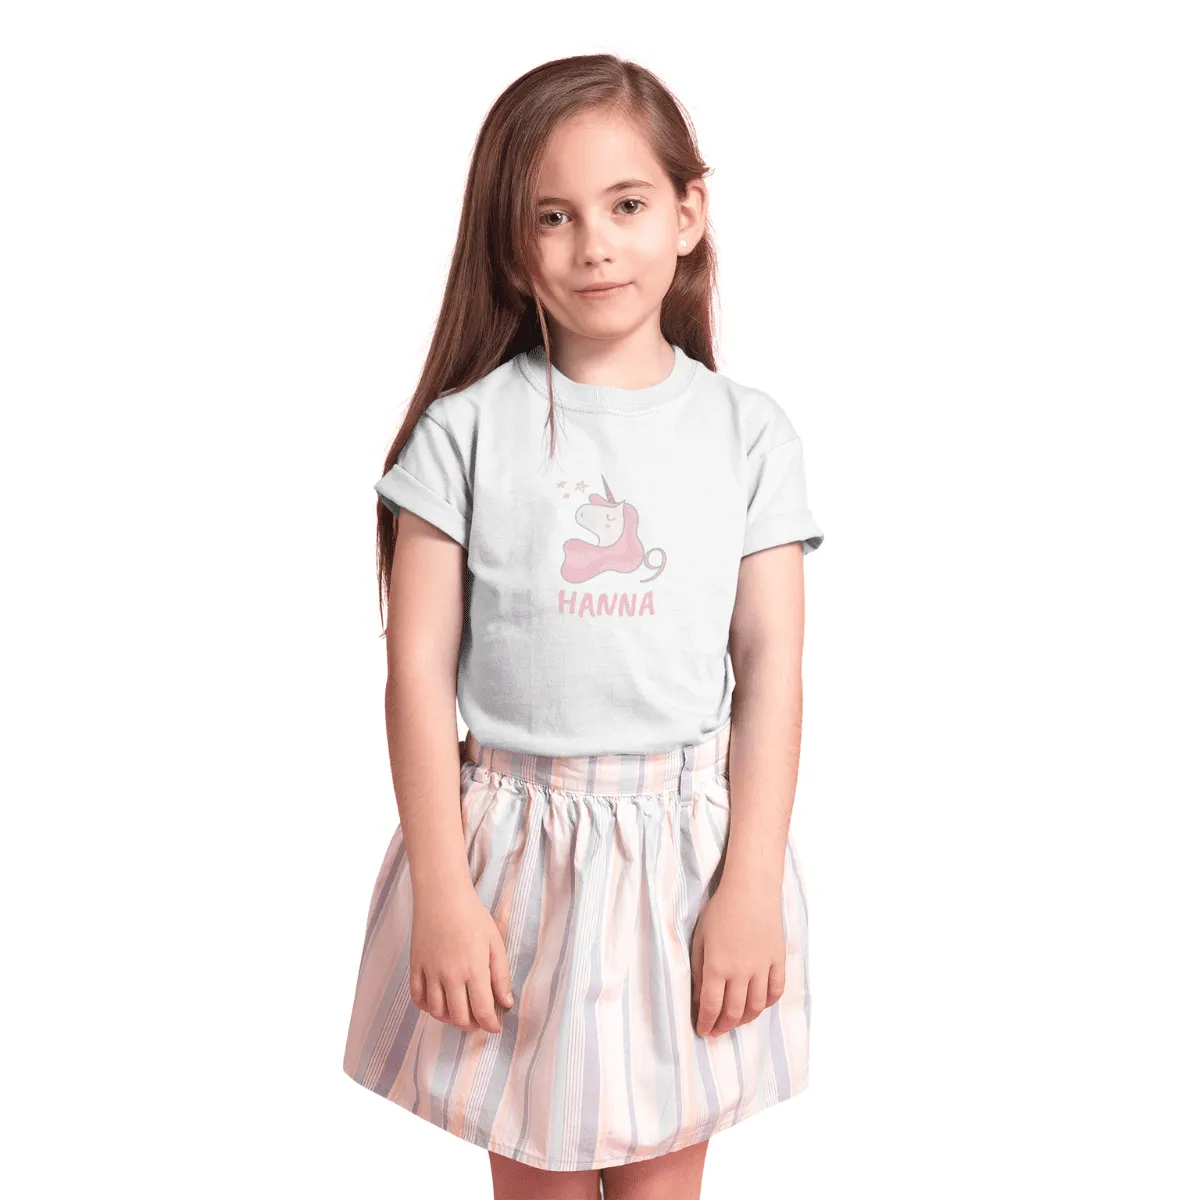 Kinder T-Shirt 9. Geburtstag mit Wunschname und Alter | Design Einhorn | Personalisiert | Kinder Geschenk Ich Bin jetzt 9 | Baumwolle - Fair Trade | Kurzarm | Weiß